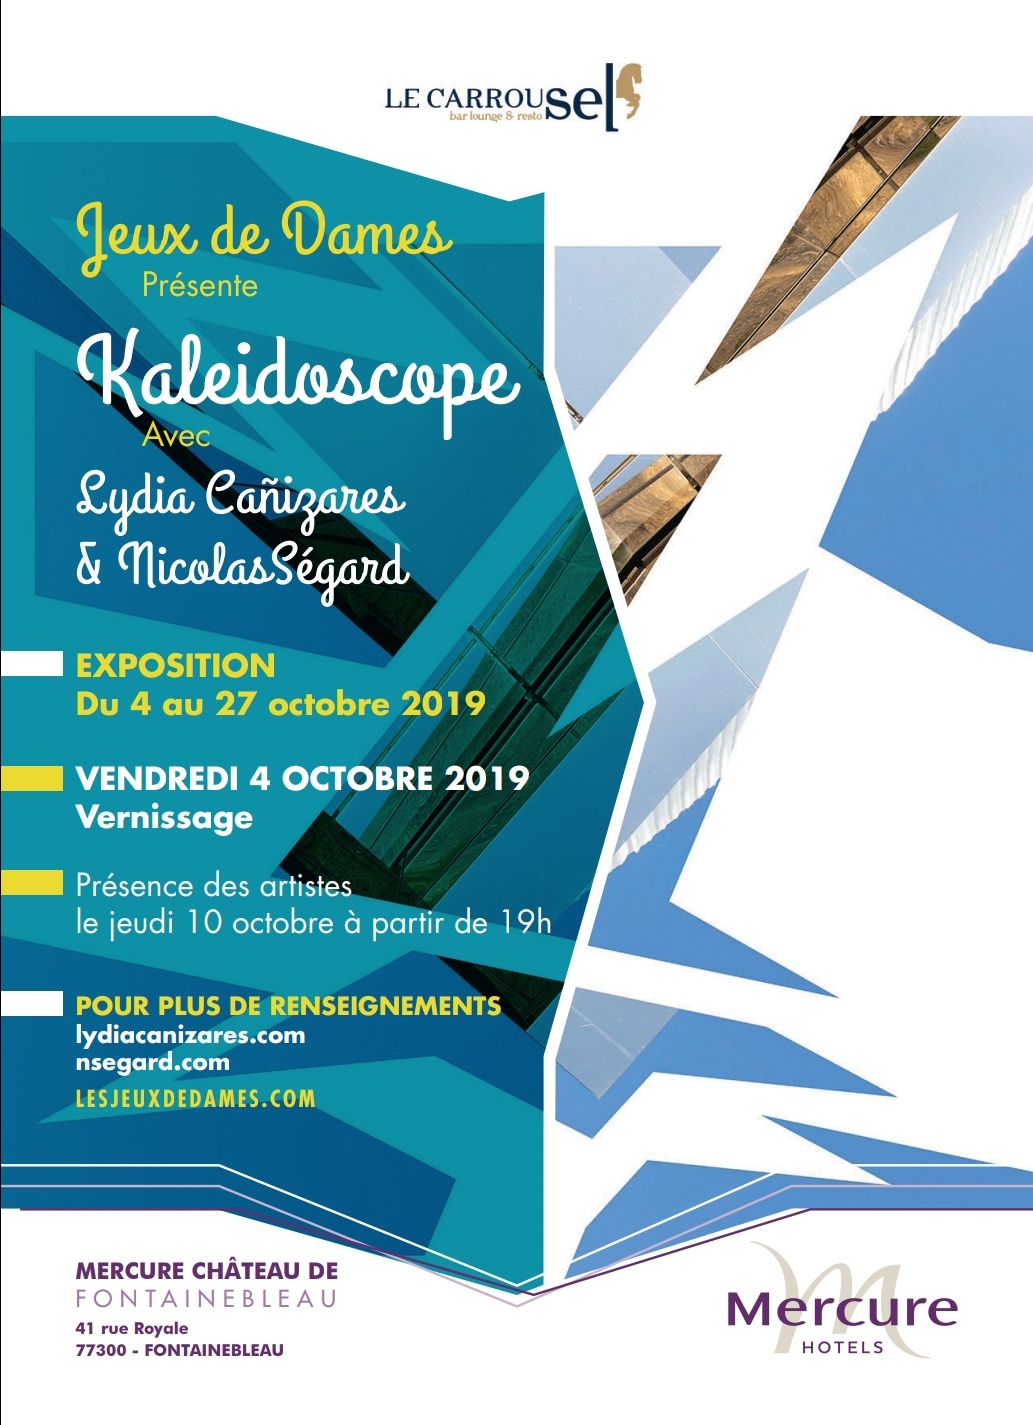 Kaleidoscope Lydia Canizares Nicolas Segard Hotel Mercure Fontainebleau